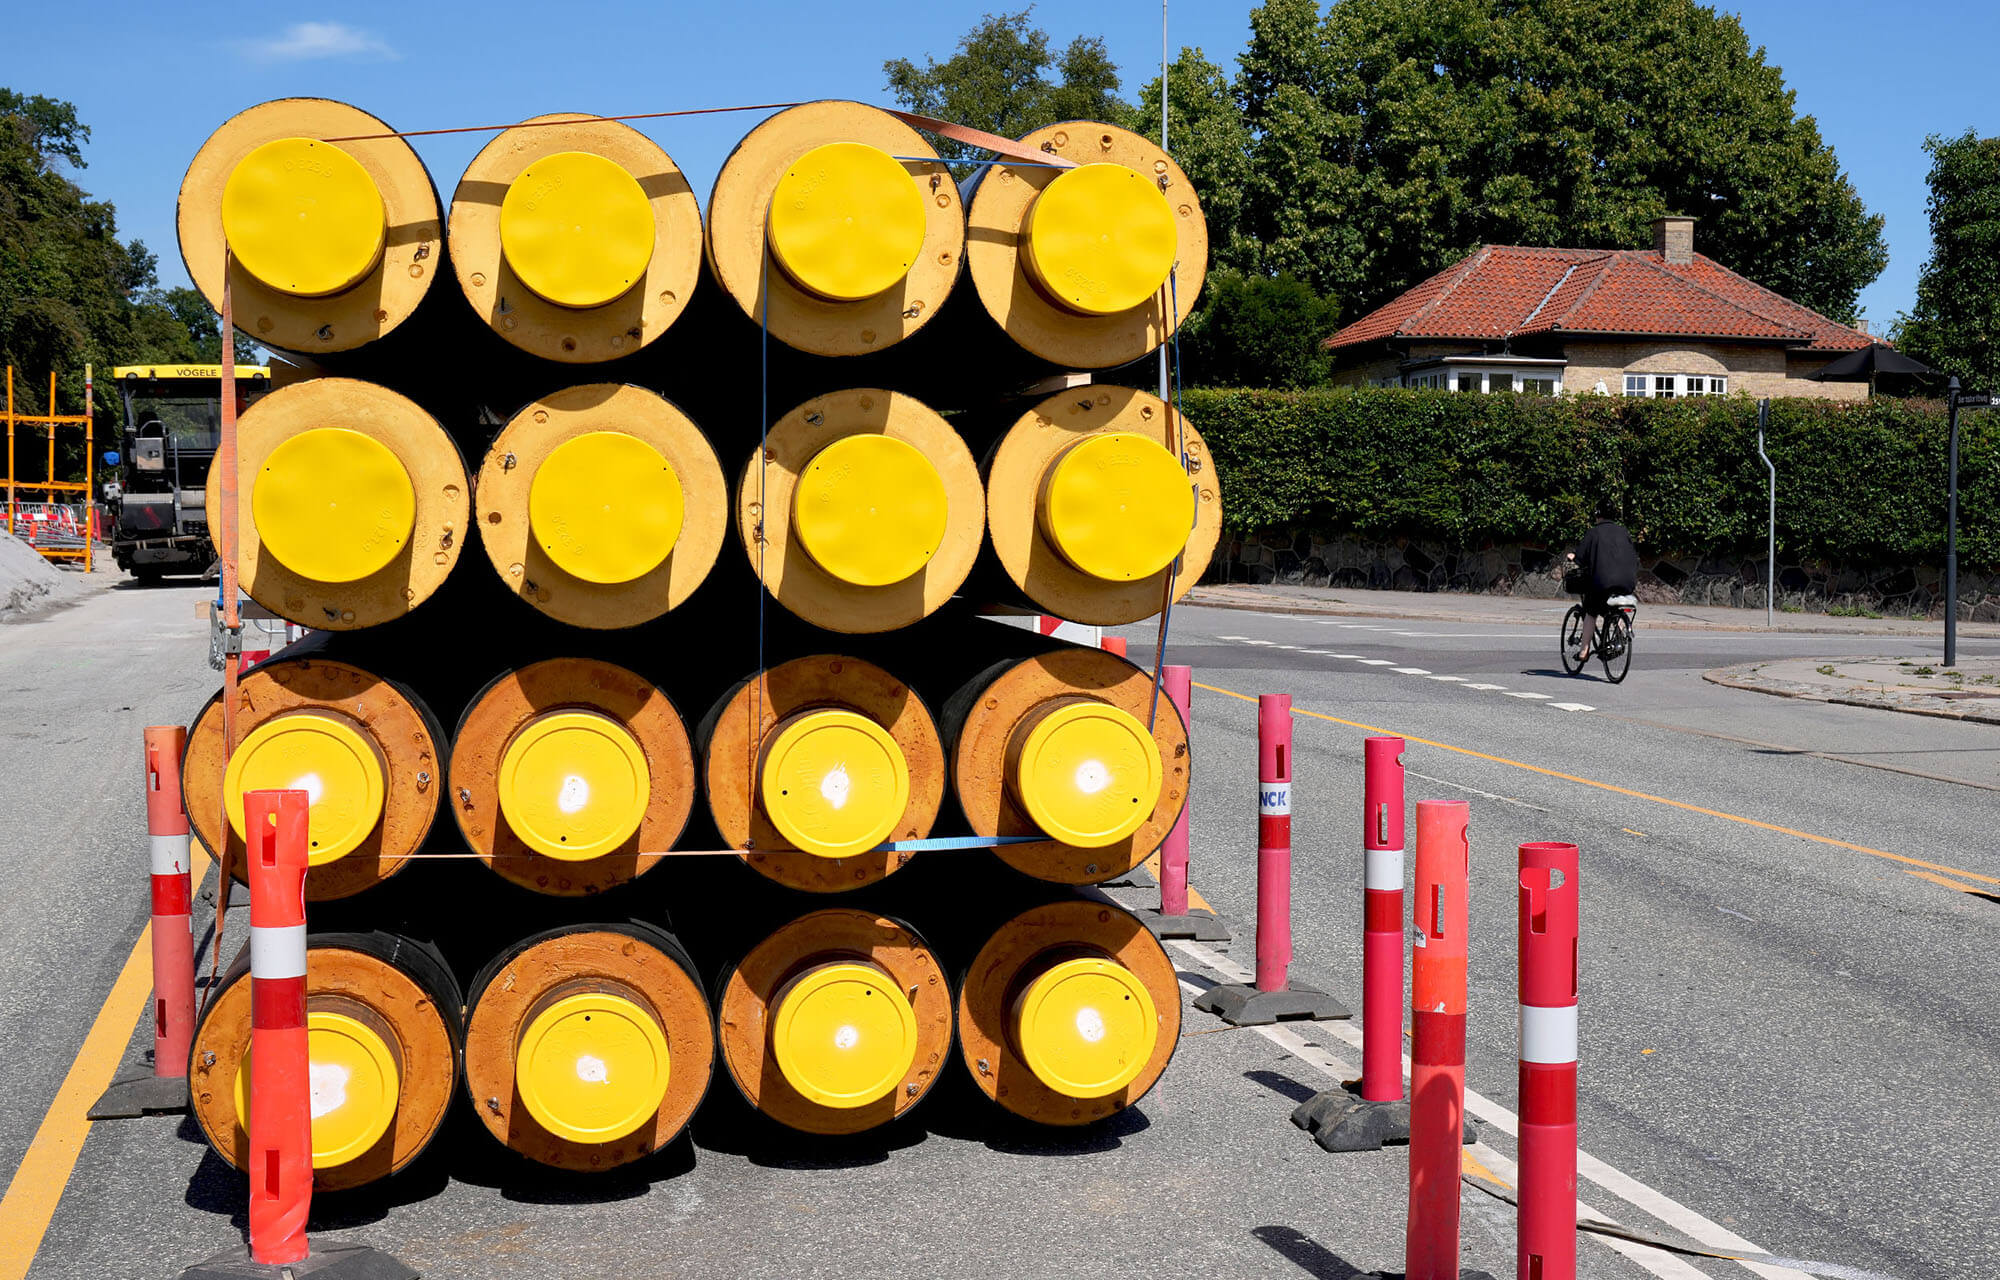 Stablede gule fjernvarmerør på villavej, med cyklist i baggrunden